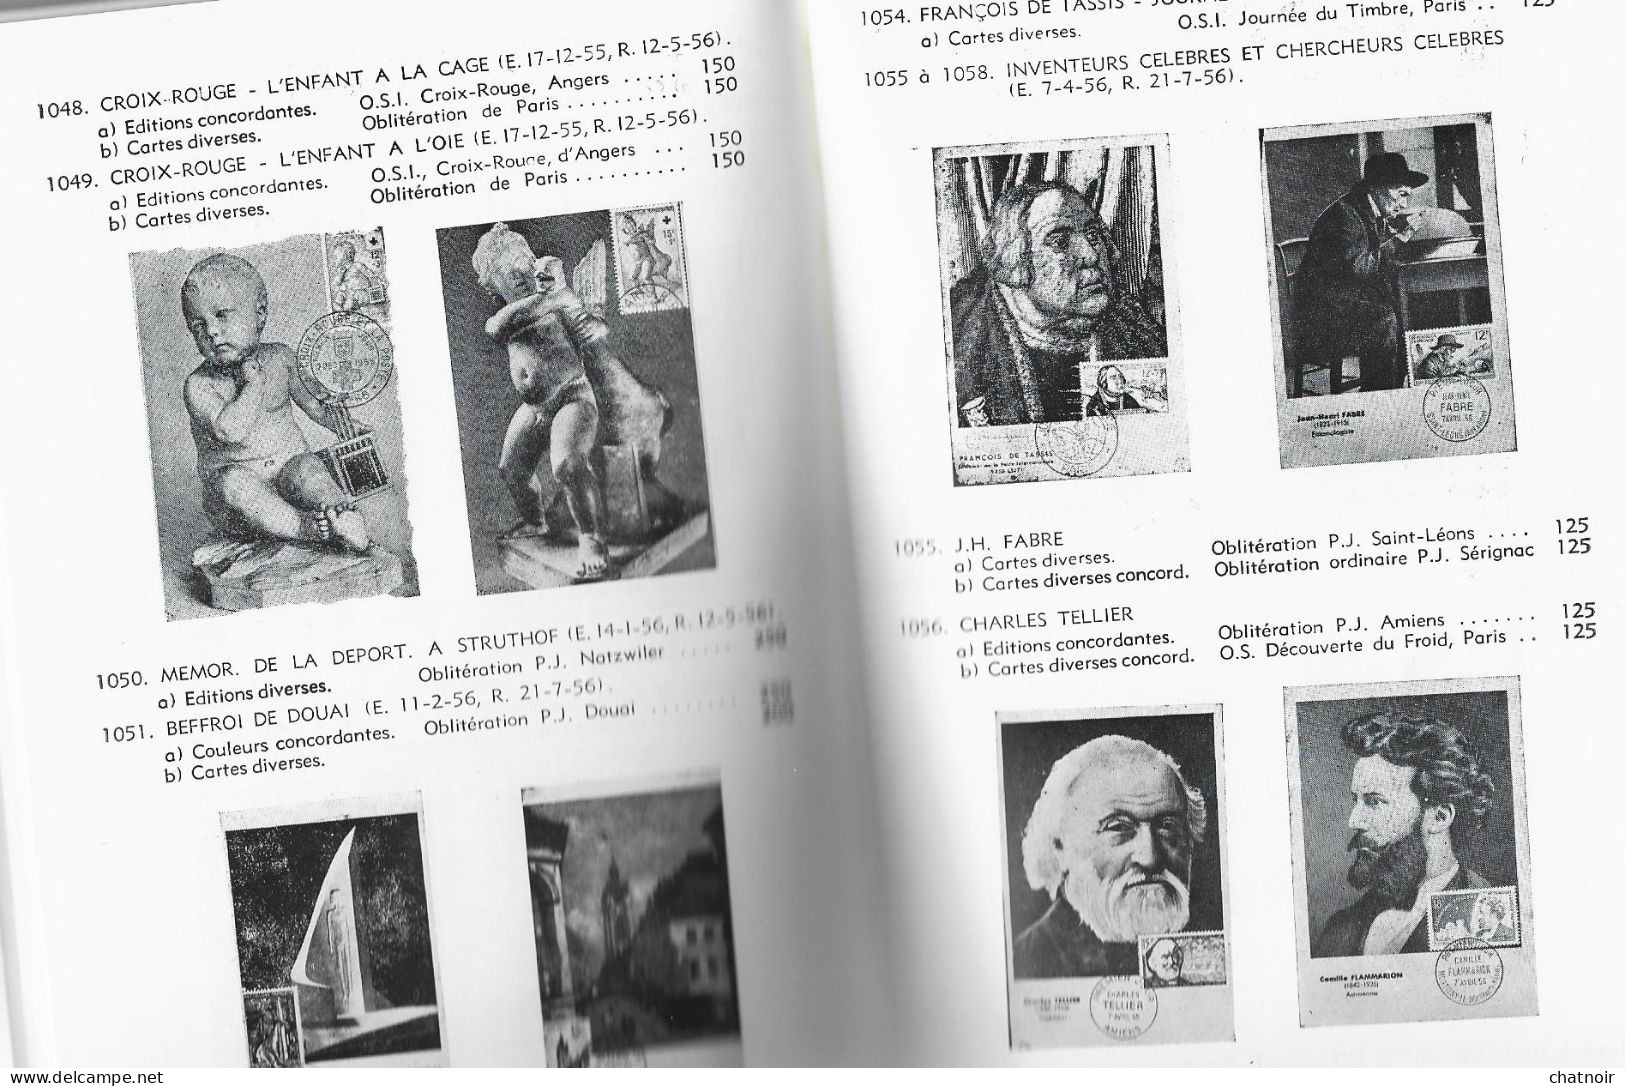 Catalogue  De Cartes Maximum  De France  1959   106 Pages - Catalogues De Maisons De Vente